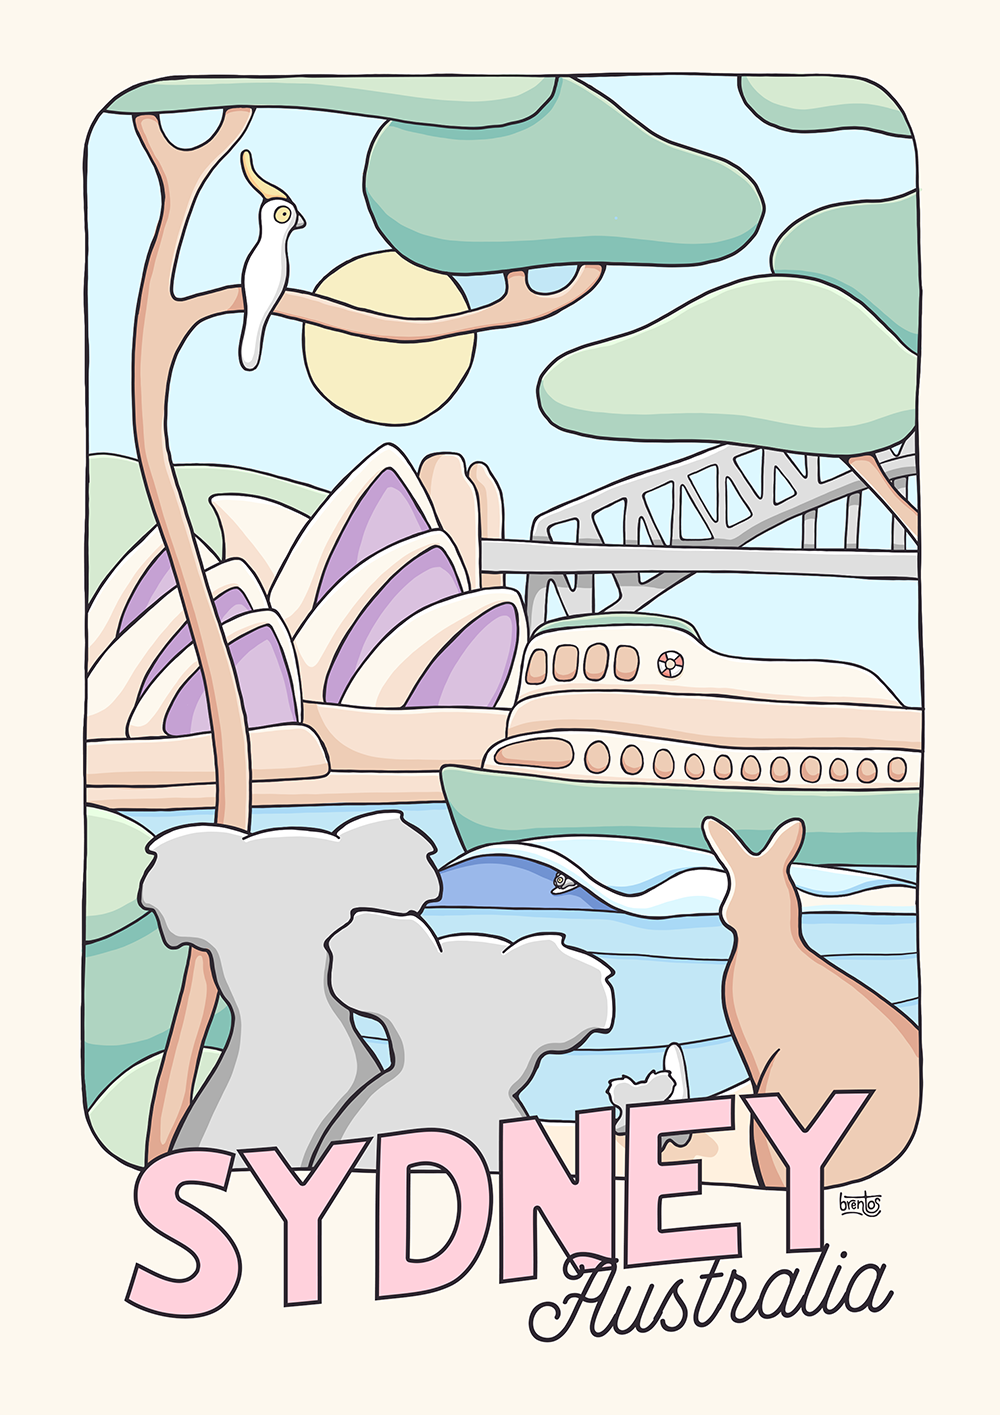 antyder Siege afhængige Sydney Australia Poster by Brentos